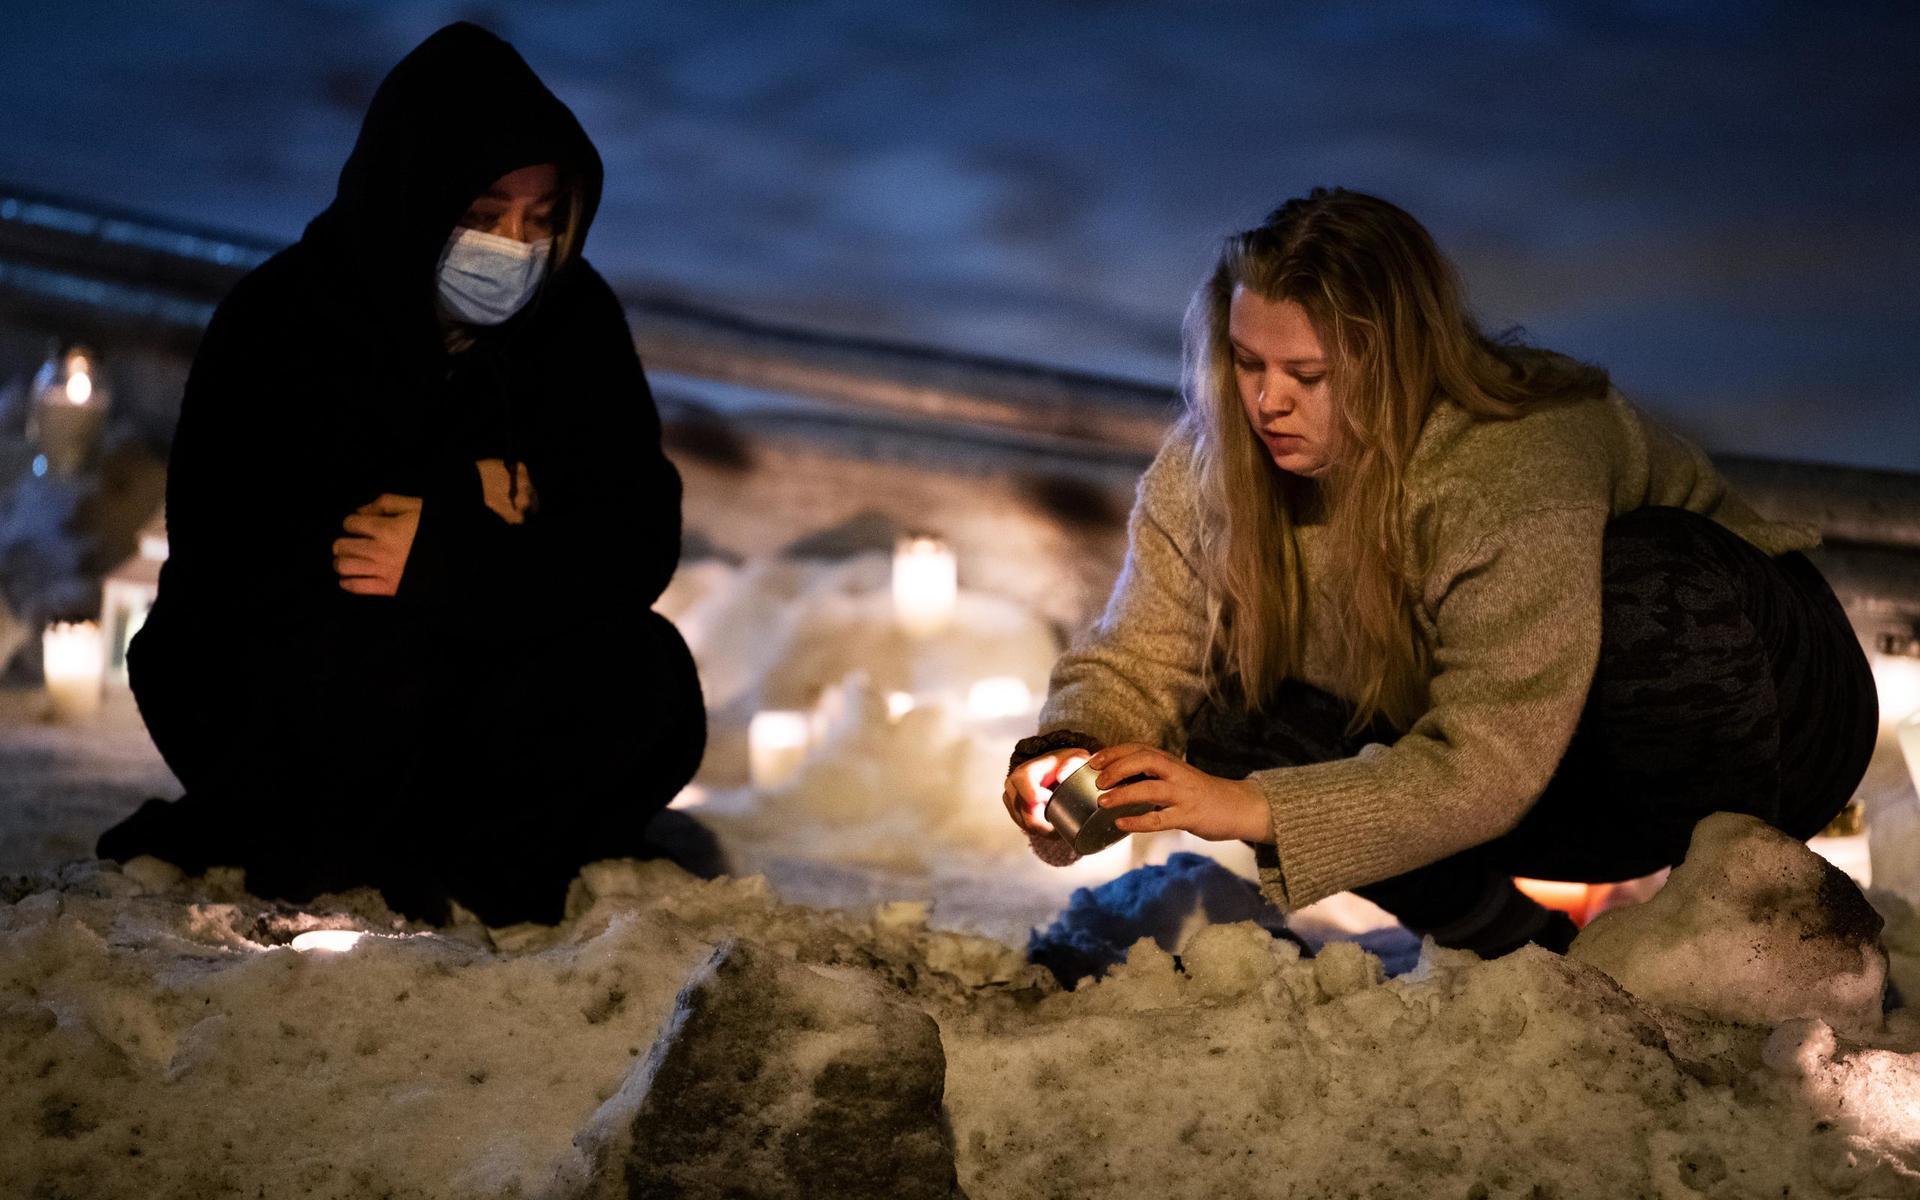 Nora Banne, 20 och Nathalie Hellesen 20, tänder ljus längs vägen till Ask. ”Vi känner flera som bor i området, vi tänder ljus för att stötta grannkommunen&quot;, säger Nora.